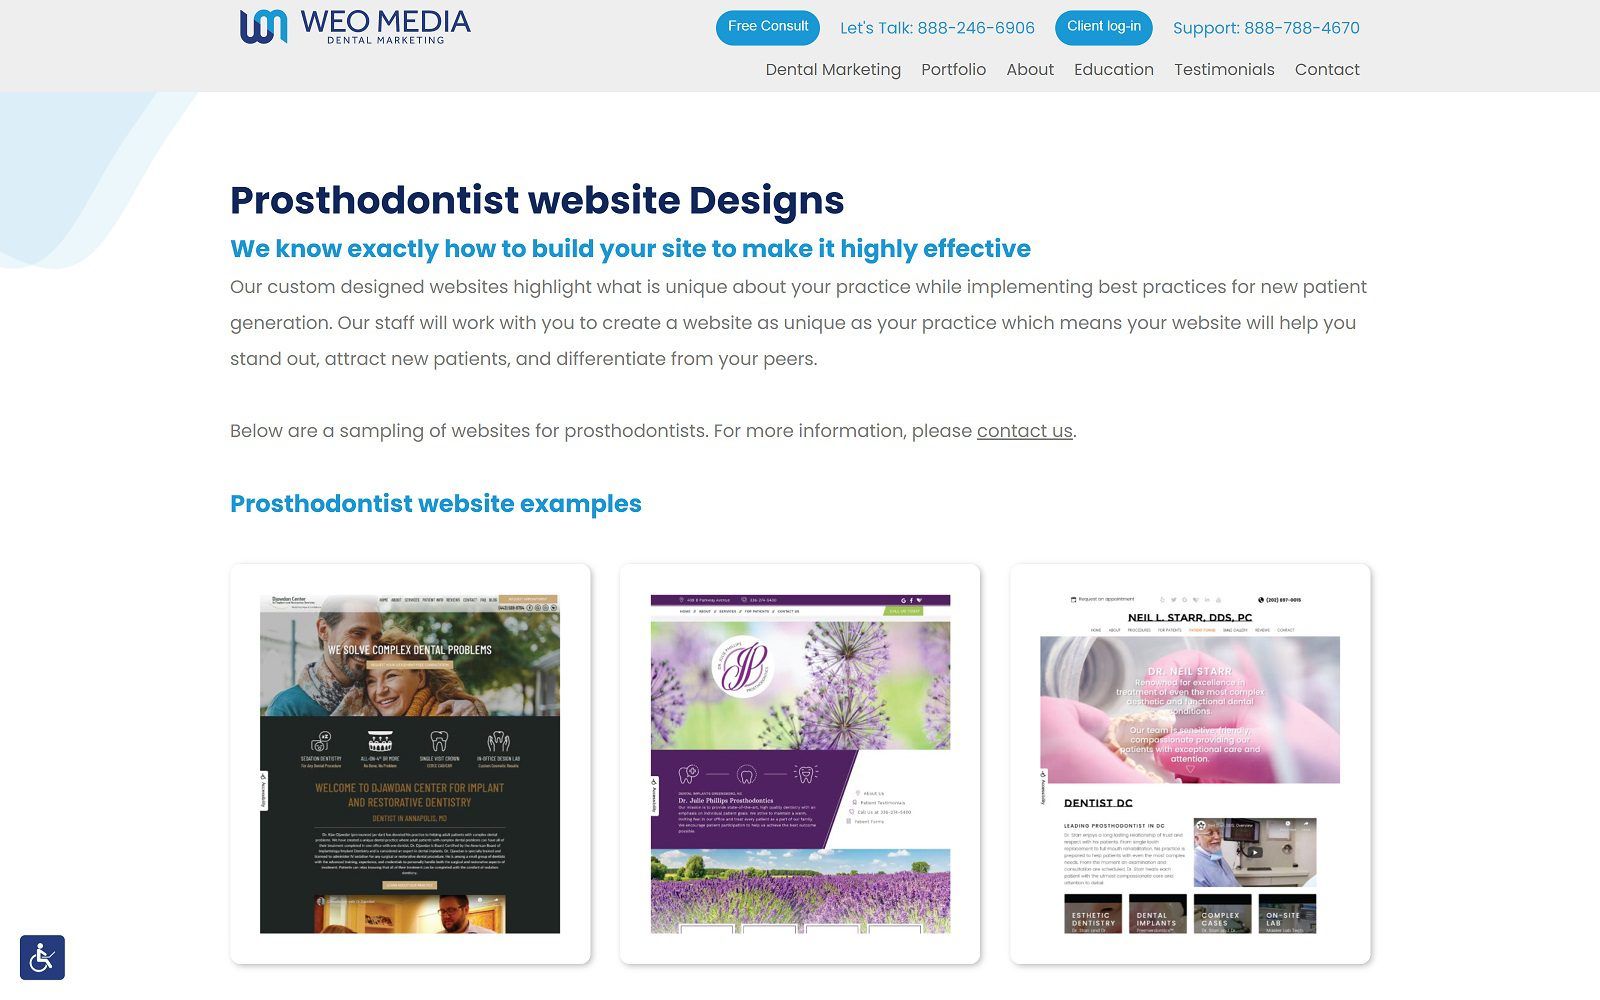 Weo media - dental marketing